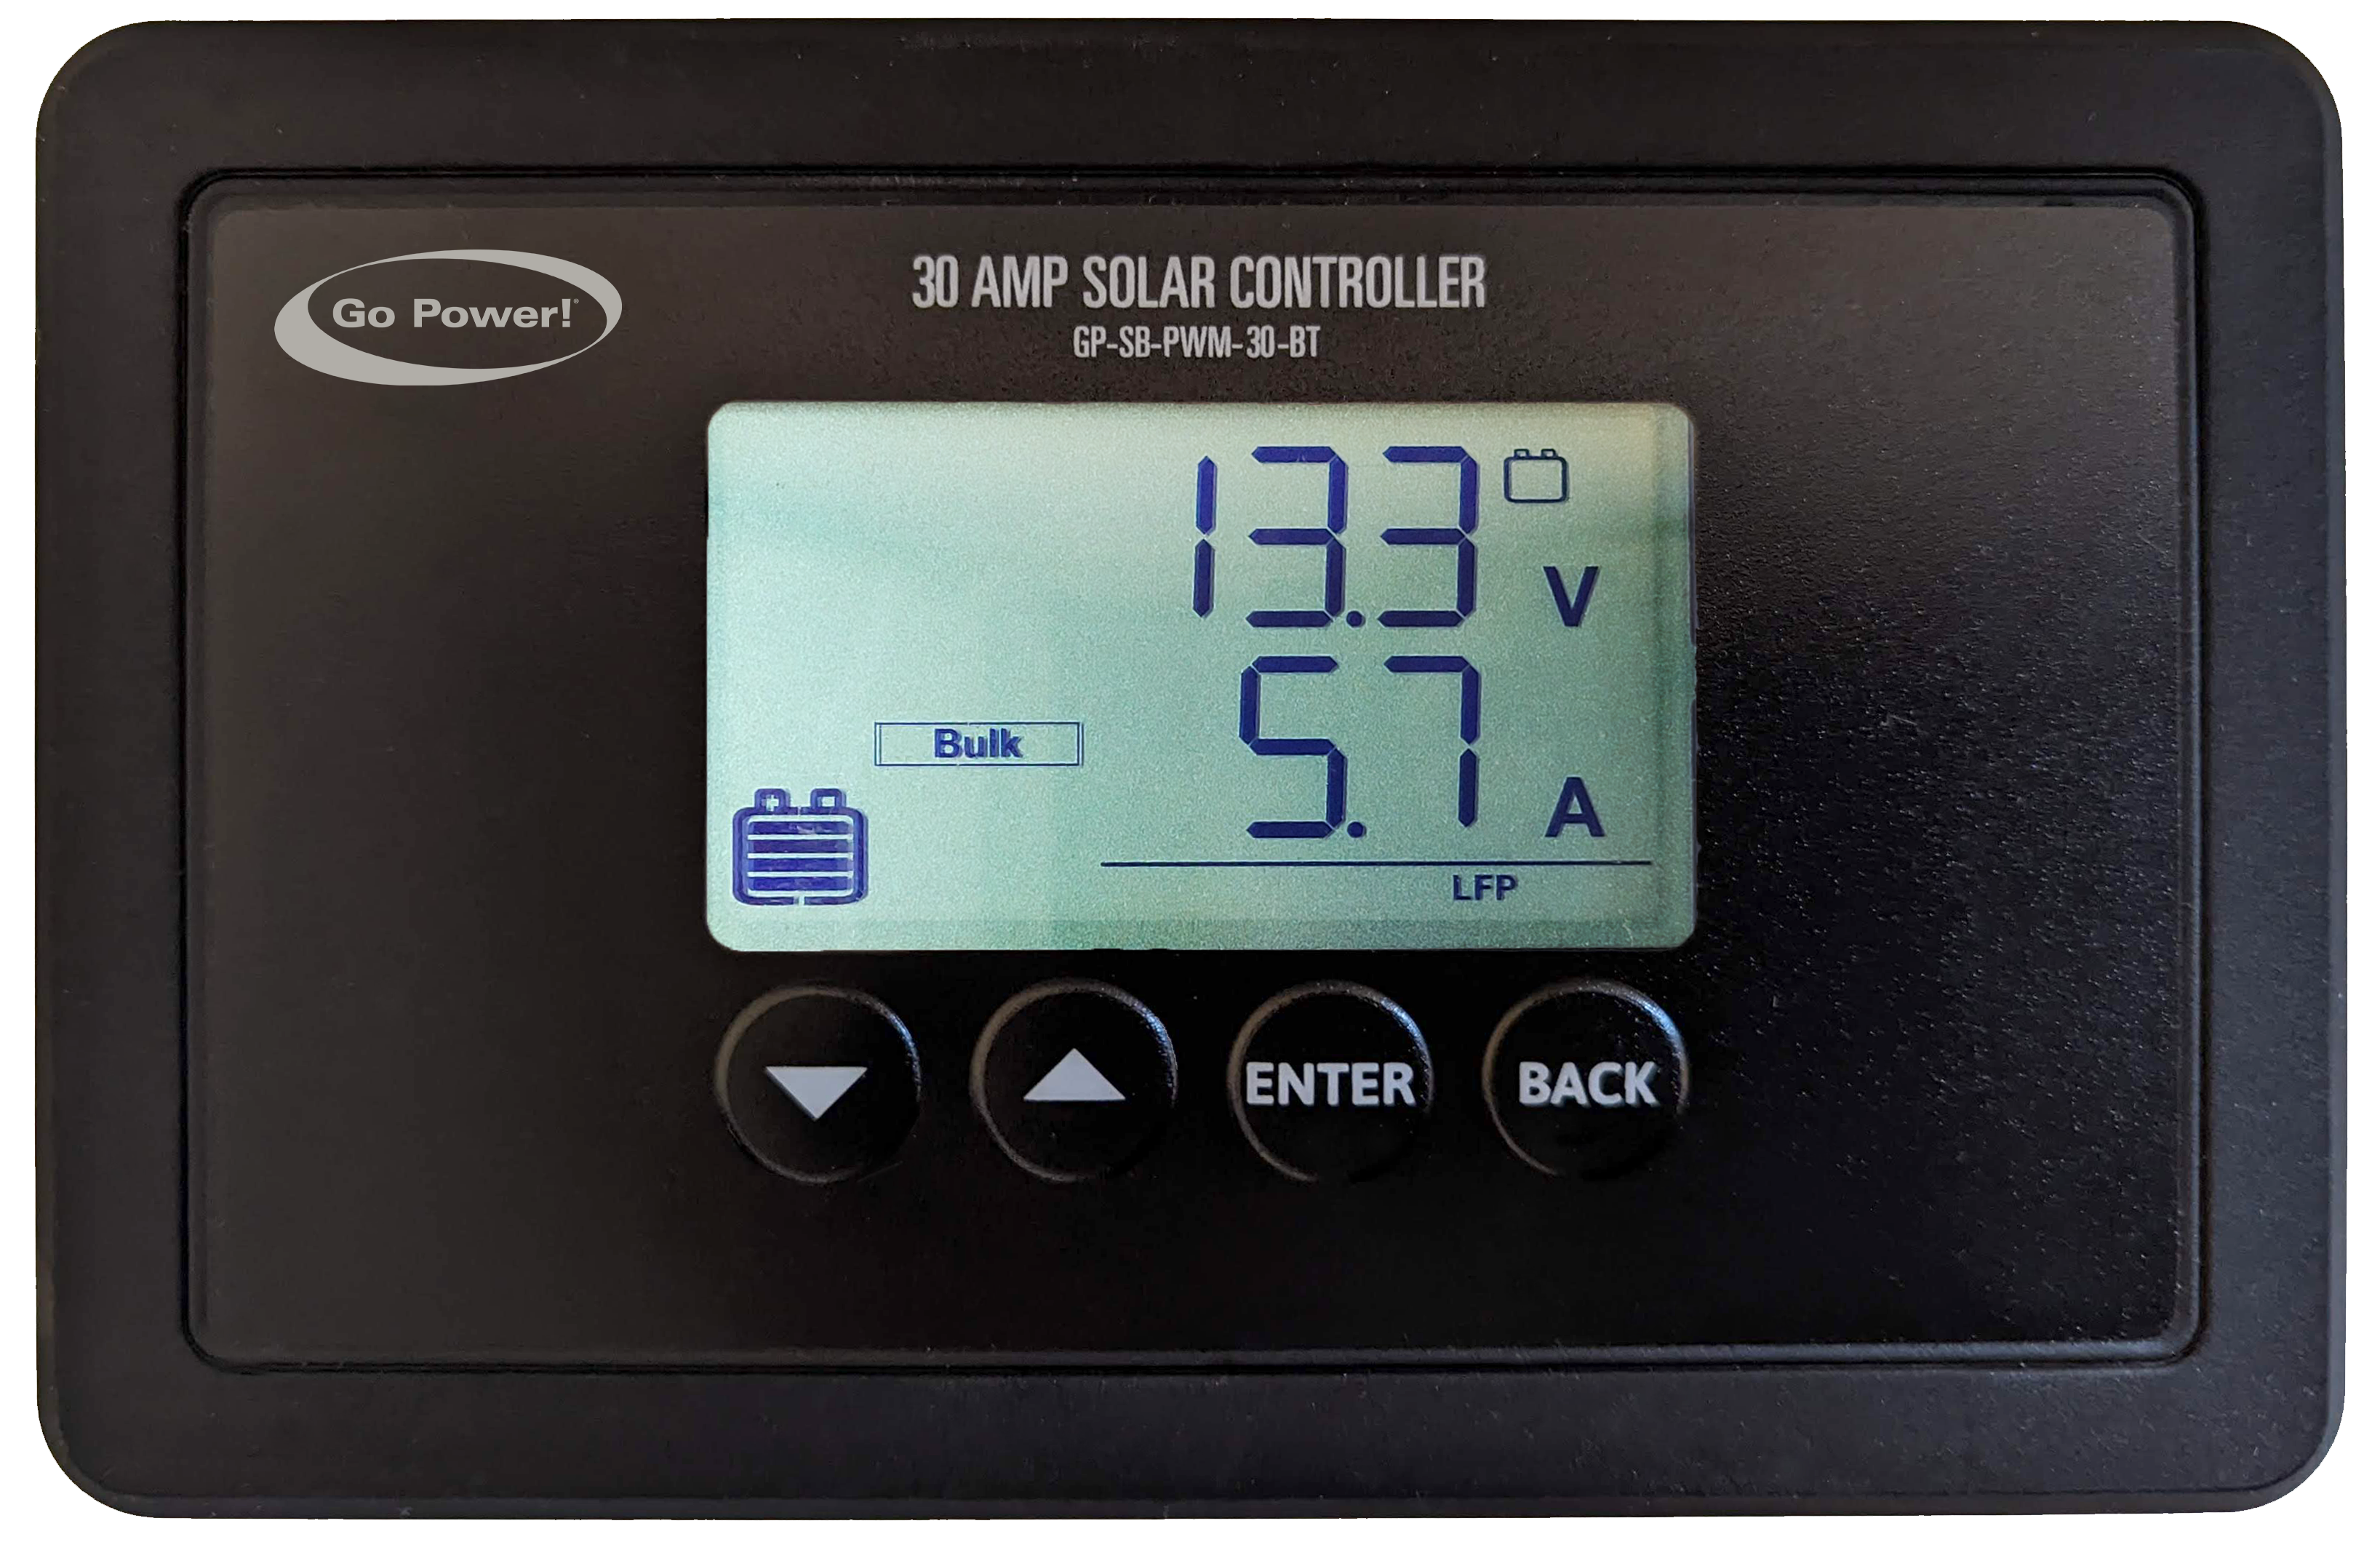 Single bank 30 amp solar controller